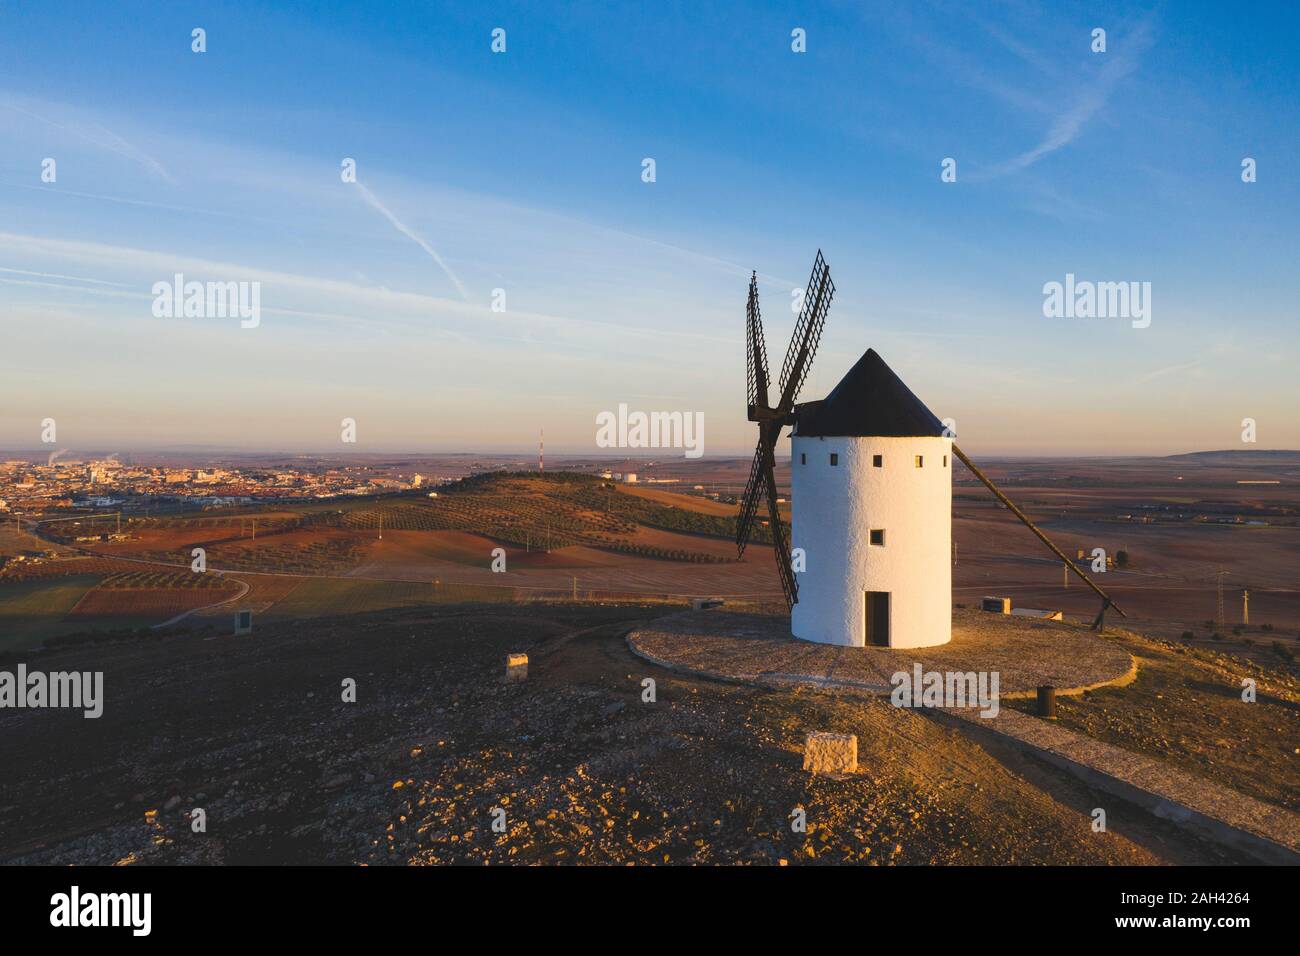 Espagne, province de Ciudad Real, Alcazar de San Juan, campagne moulin au crépuscule Banque D'Images